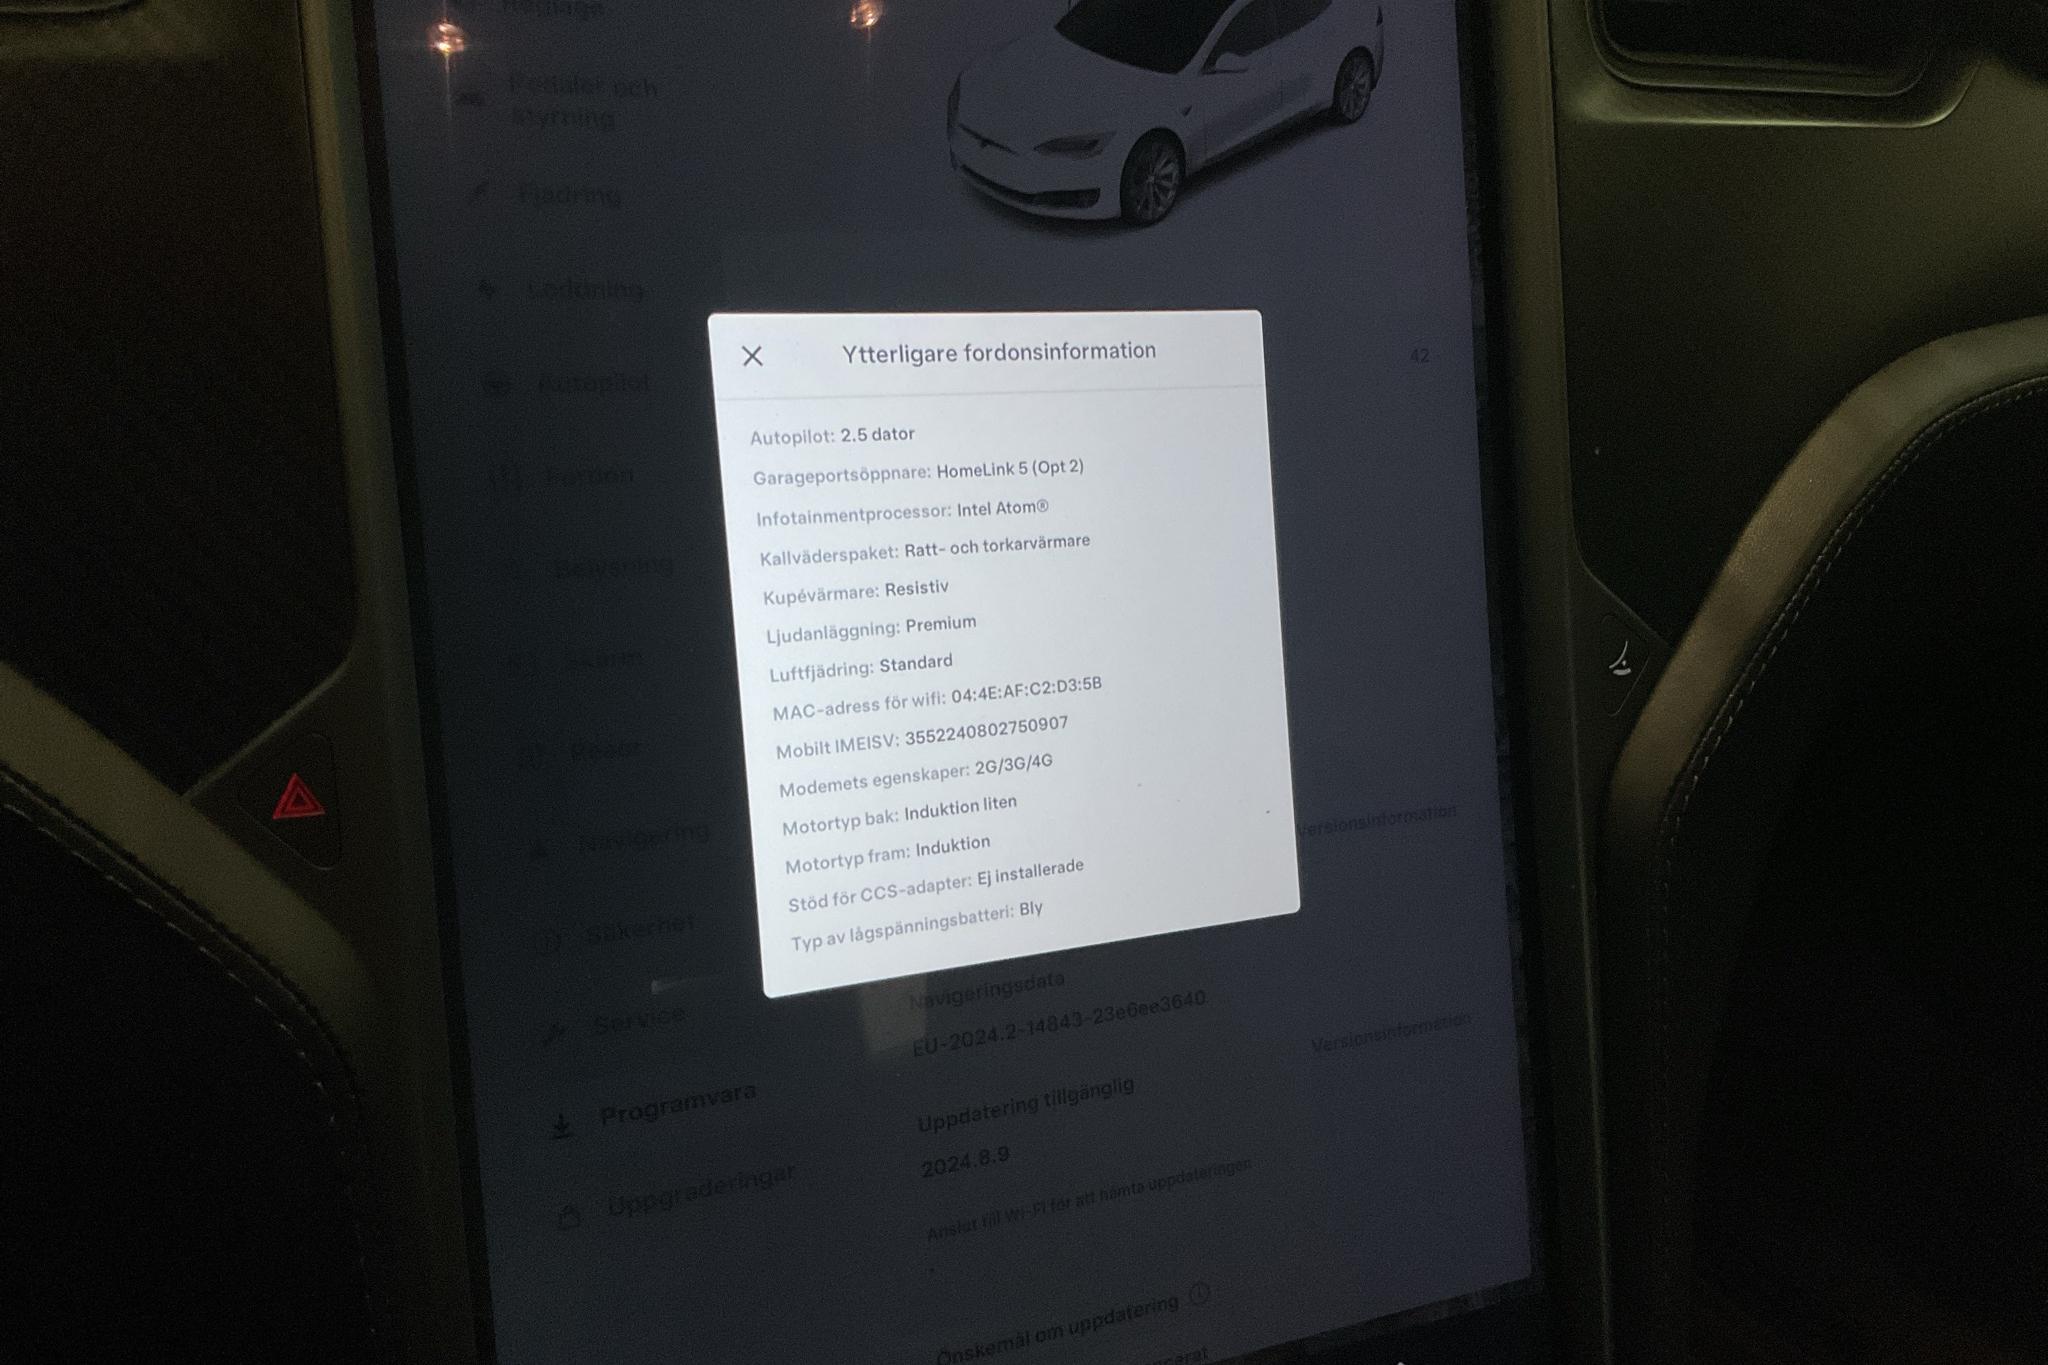 Tesla Model S 75D - 185 020 km - Automatyczna - biały - 2019